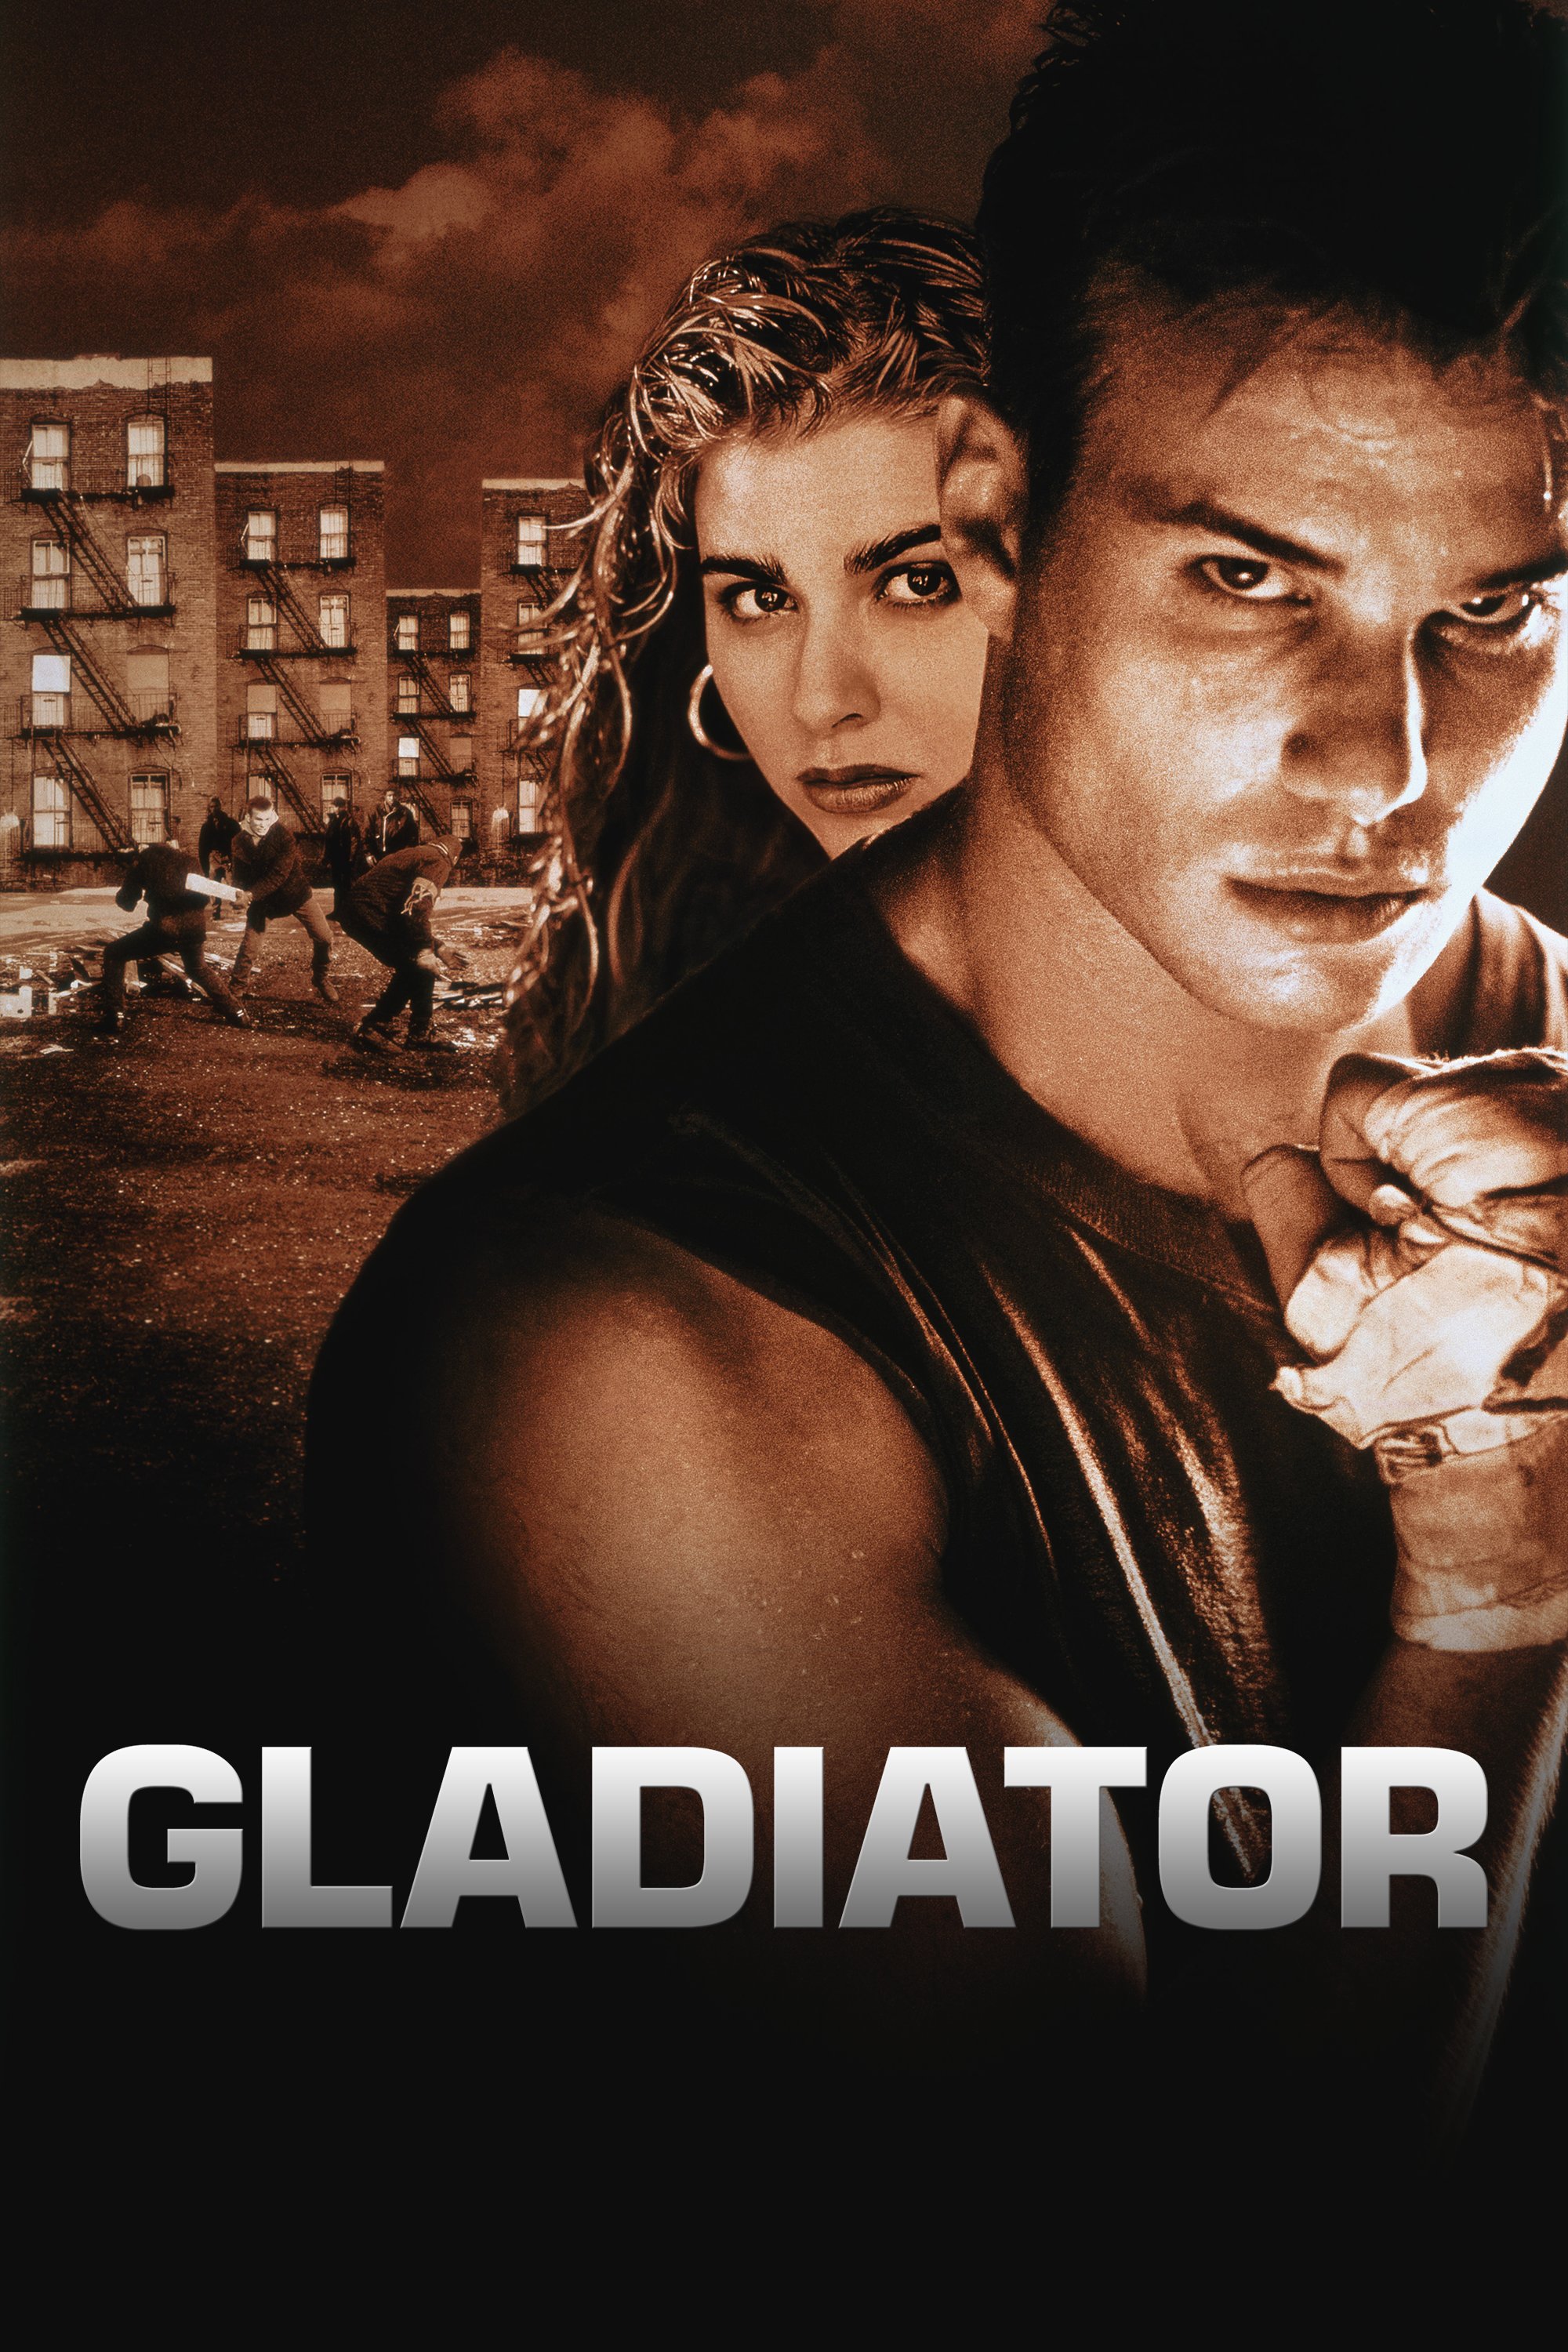 Gladiator (1992) movie at MovieScore™